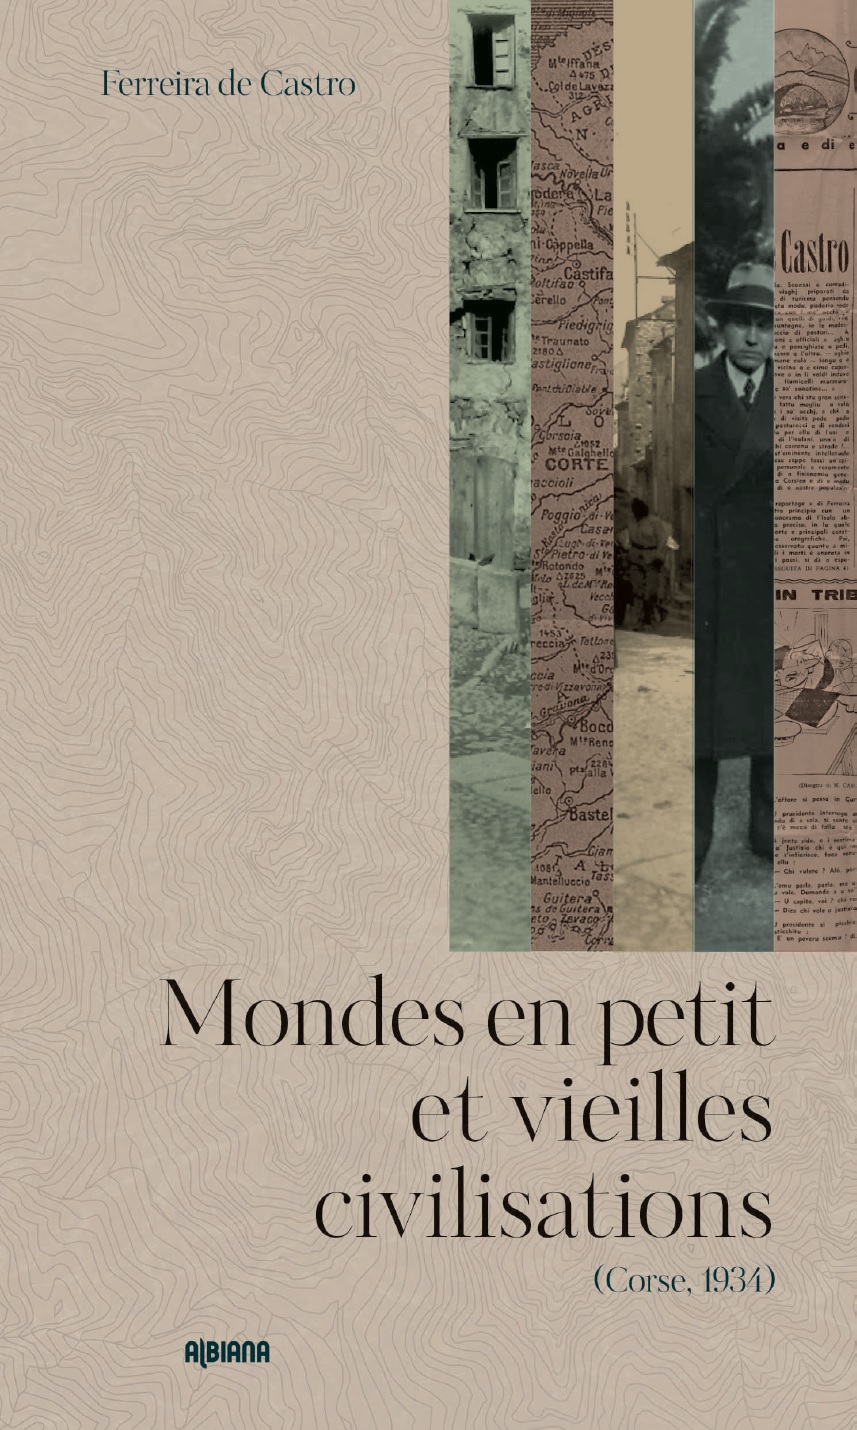 Livre : La Corse des années 30 décrite par un journaliste portugais 